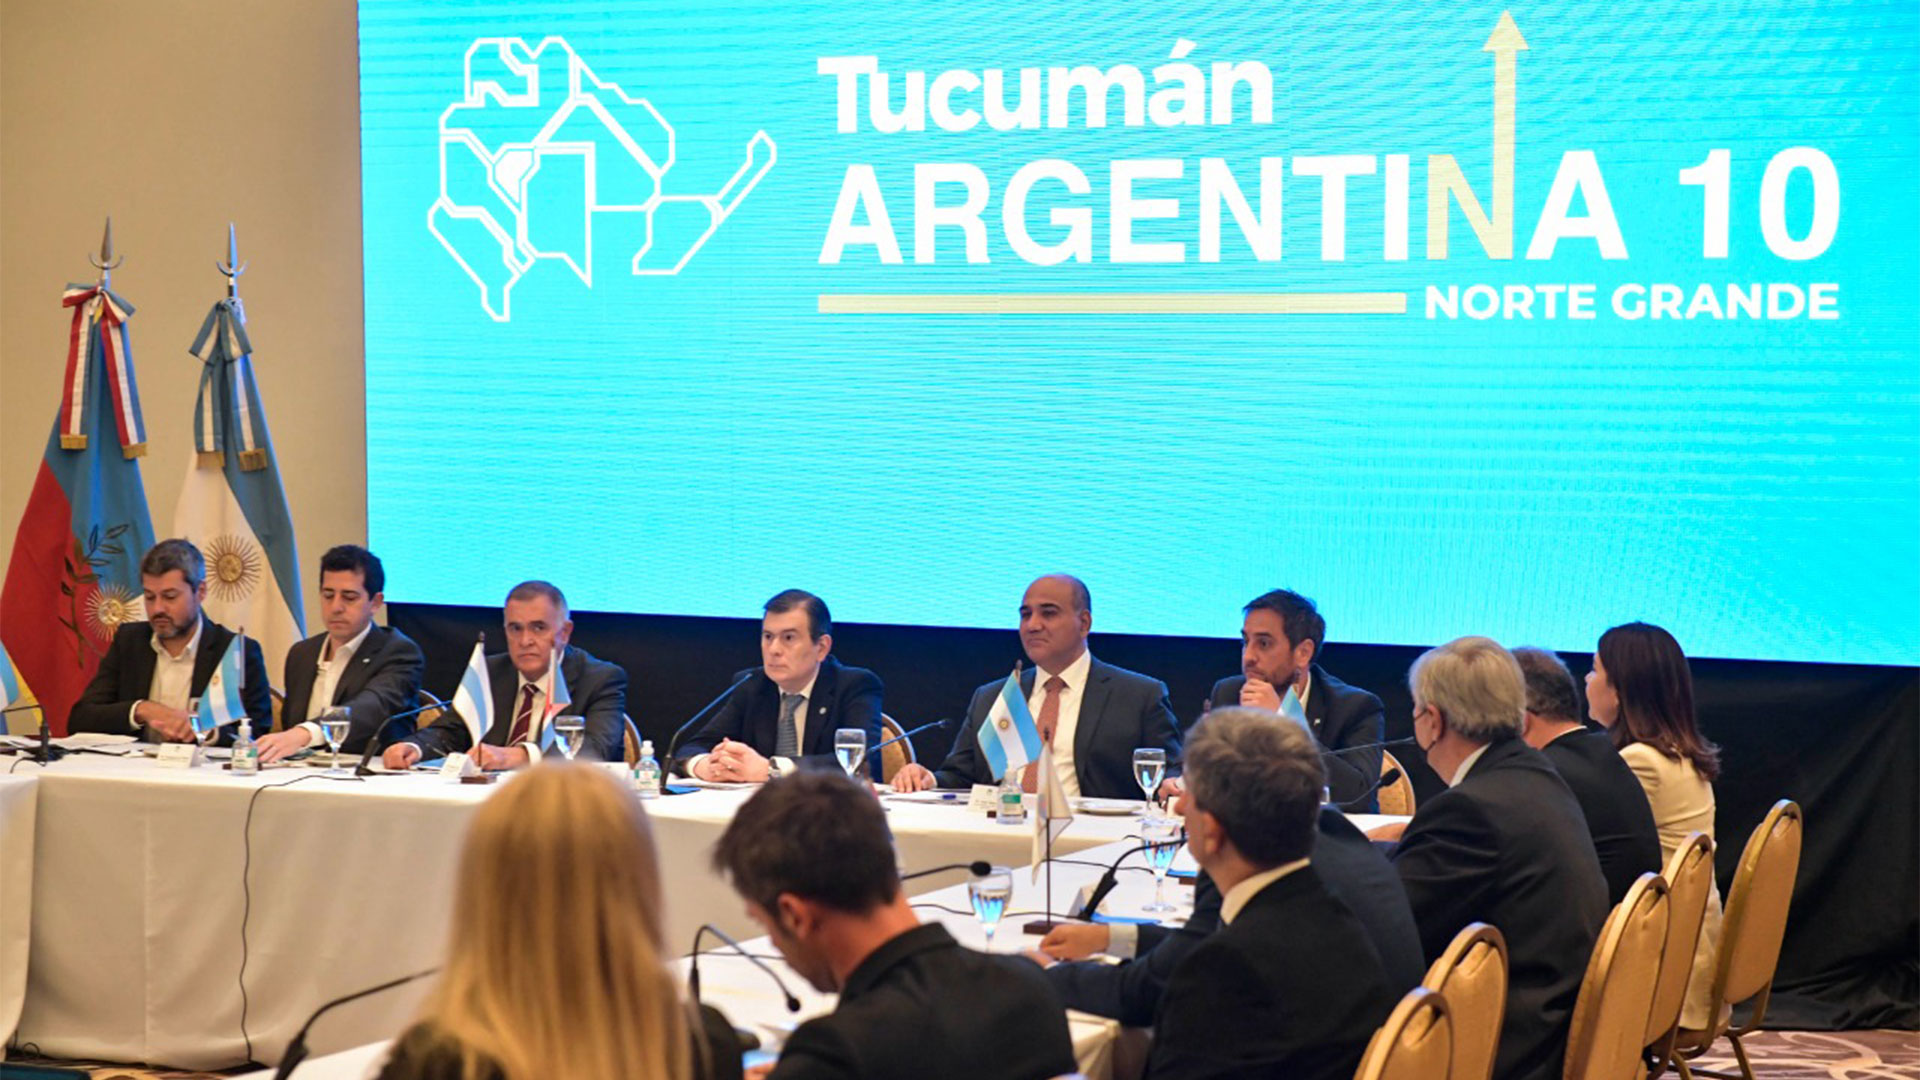 La reunión se llevó a cabo en Tucumán